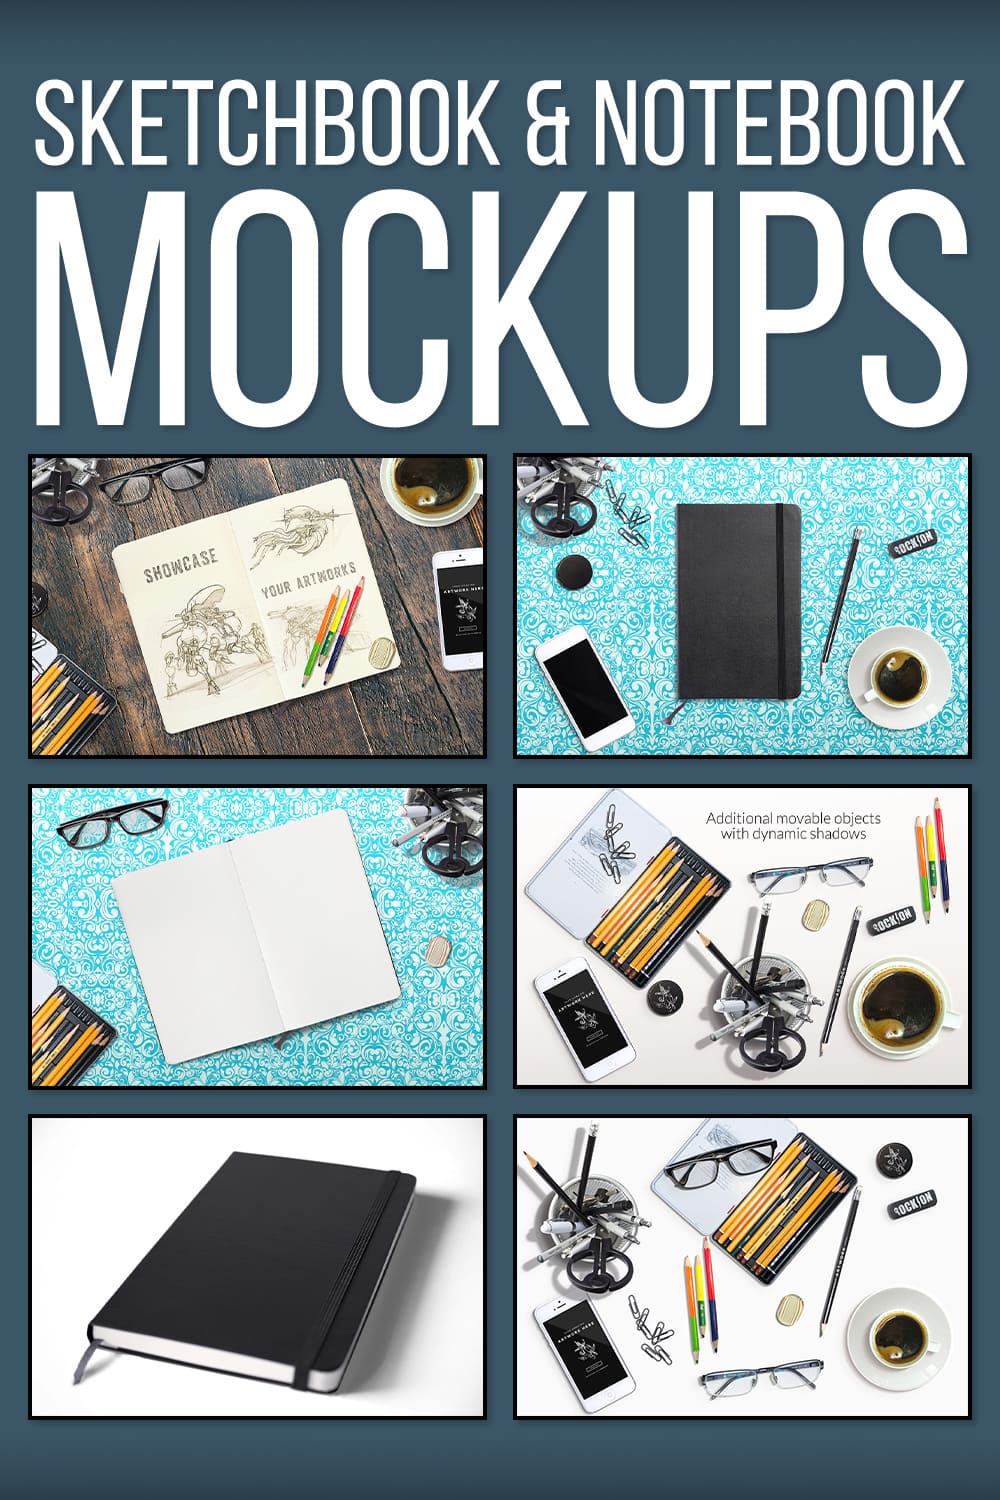 Sketchbook & Notebook Mockups - Pinterest.